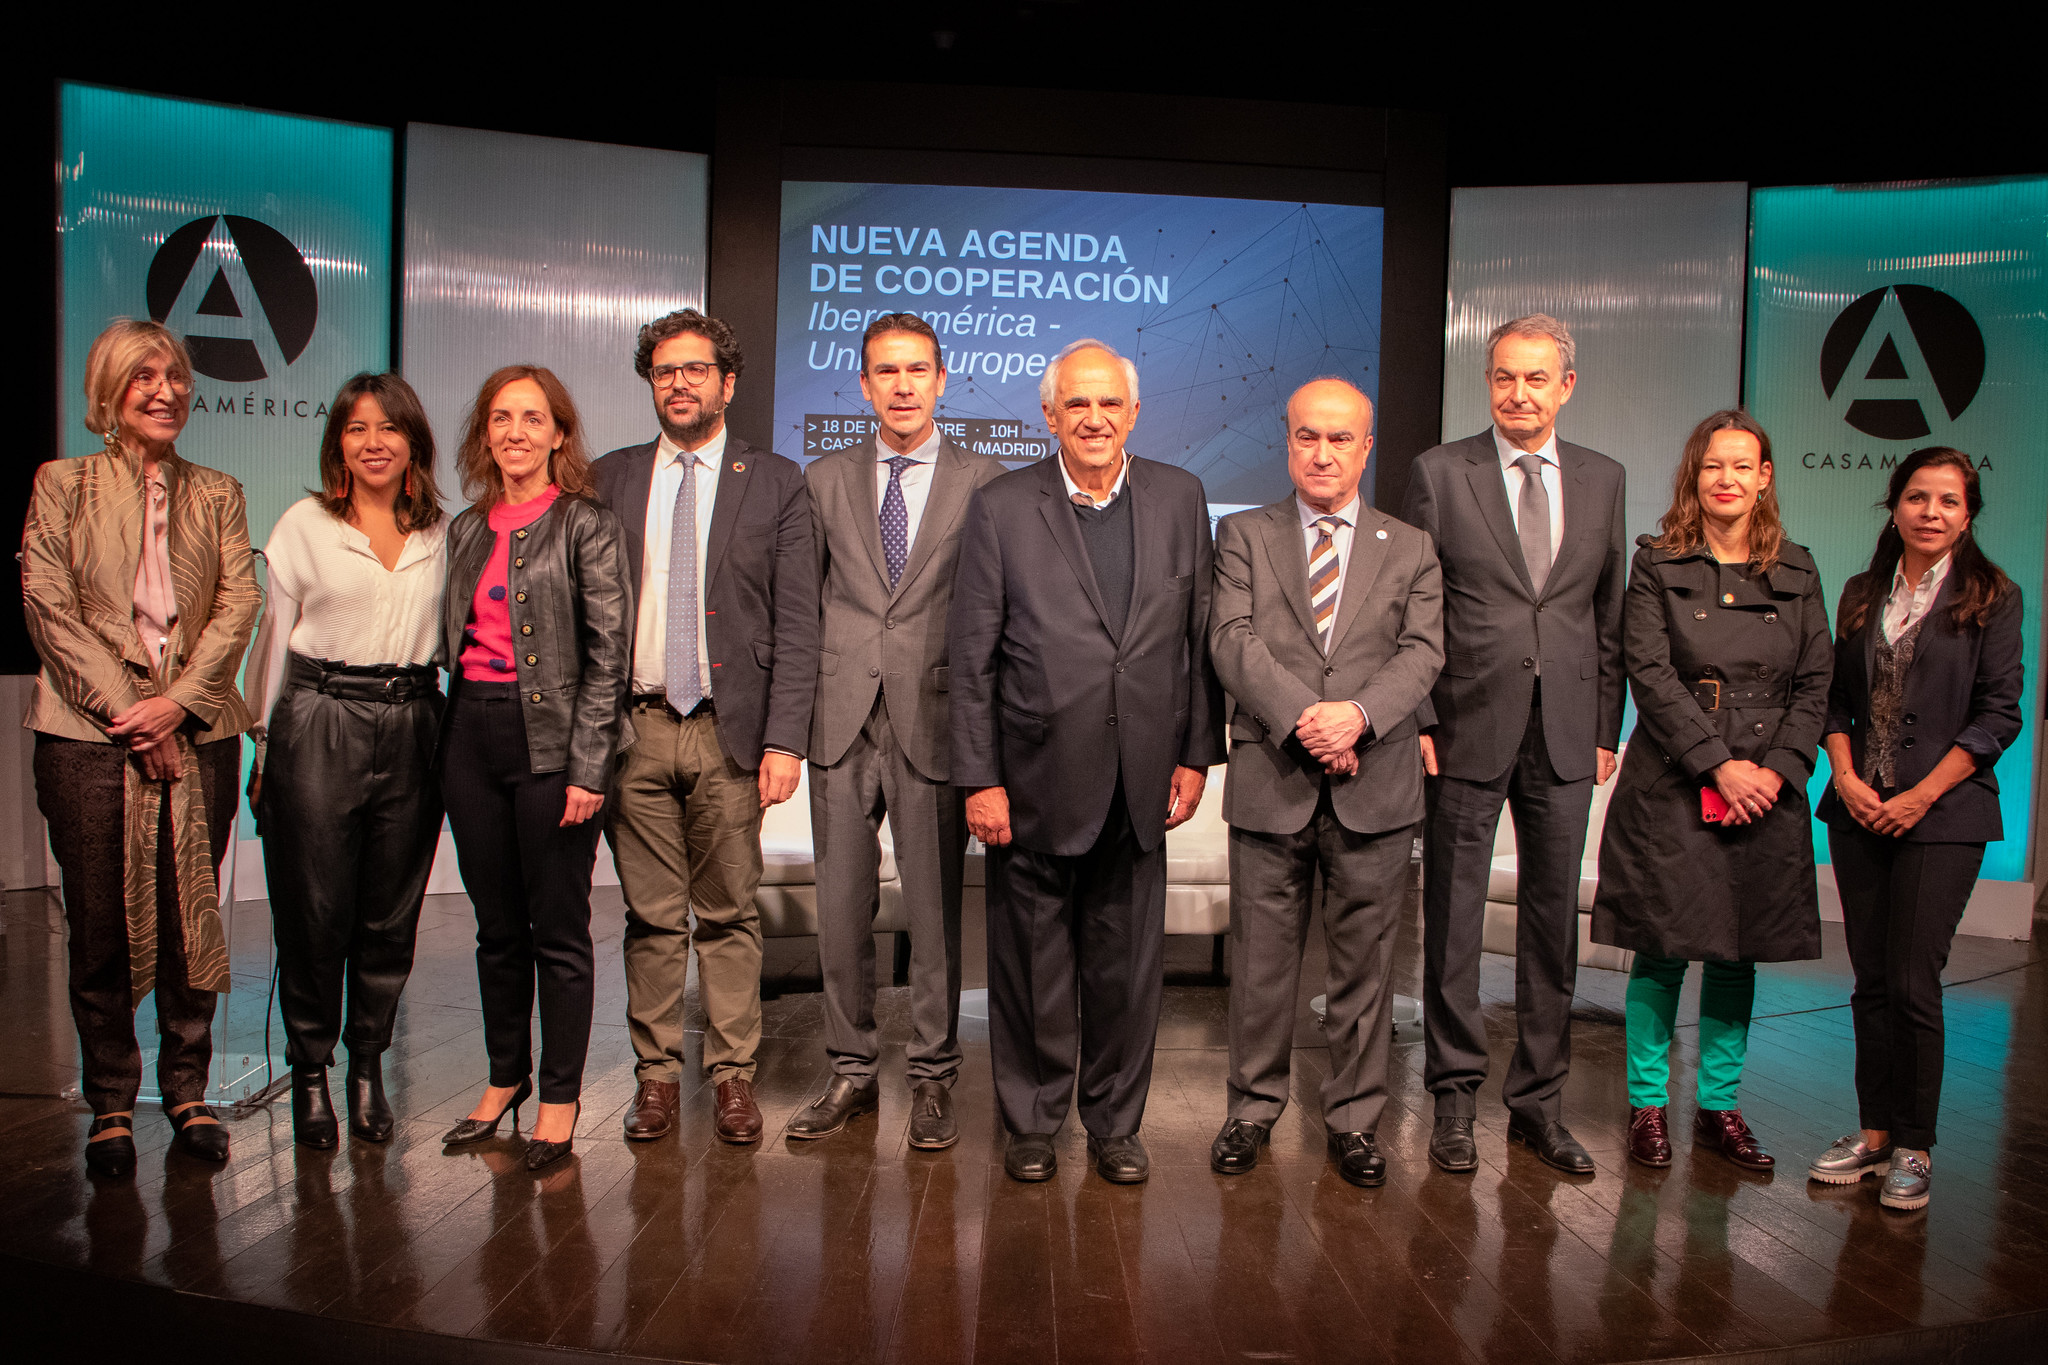 José Luis Rodríguez Zapatero: “La gran tarea pendiente de Latinoamérica es la integración”